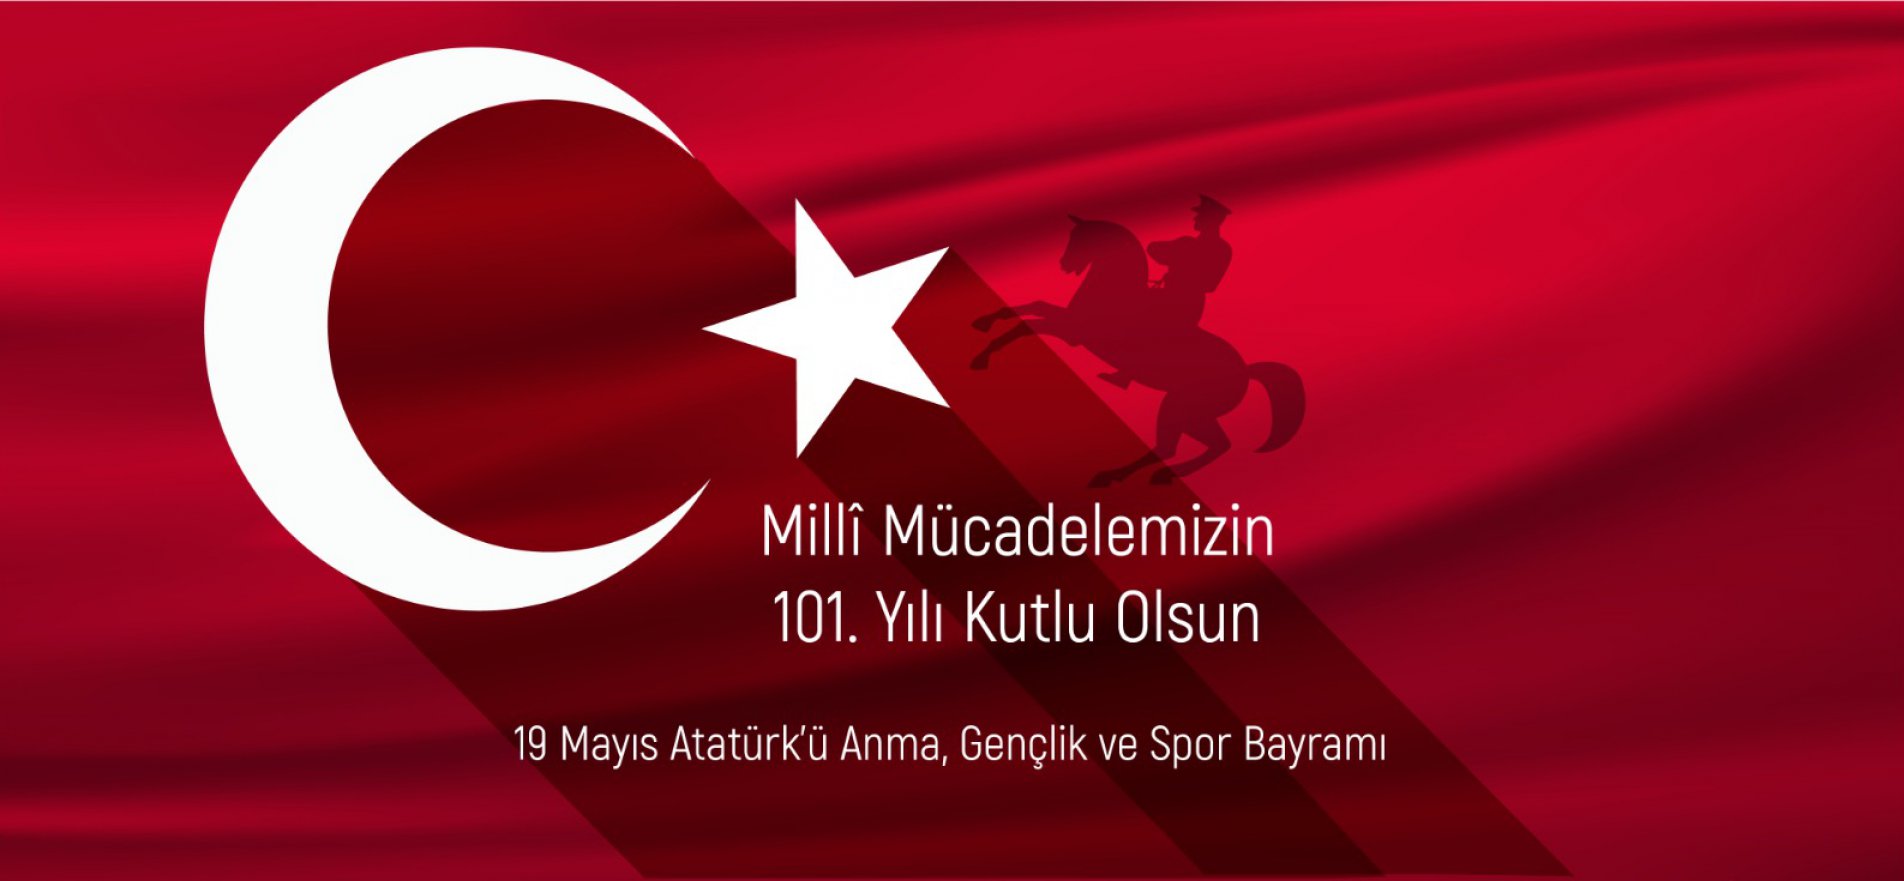 19 Mayıs Atatürk'ü anma gençllik ve spor bayramı meb gov tr sitesi 19022459_WhatsApp_Image_202...jpg